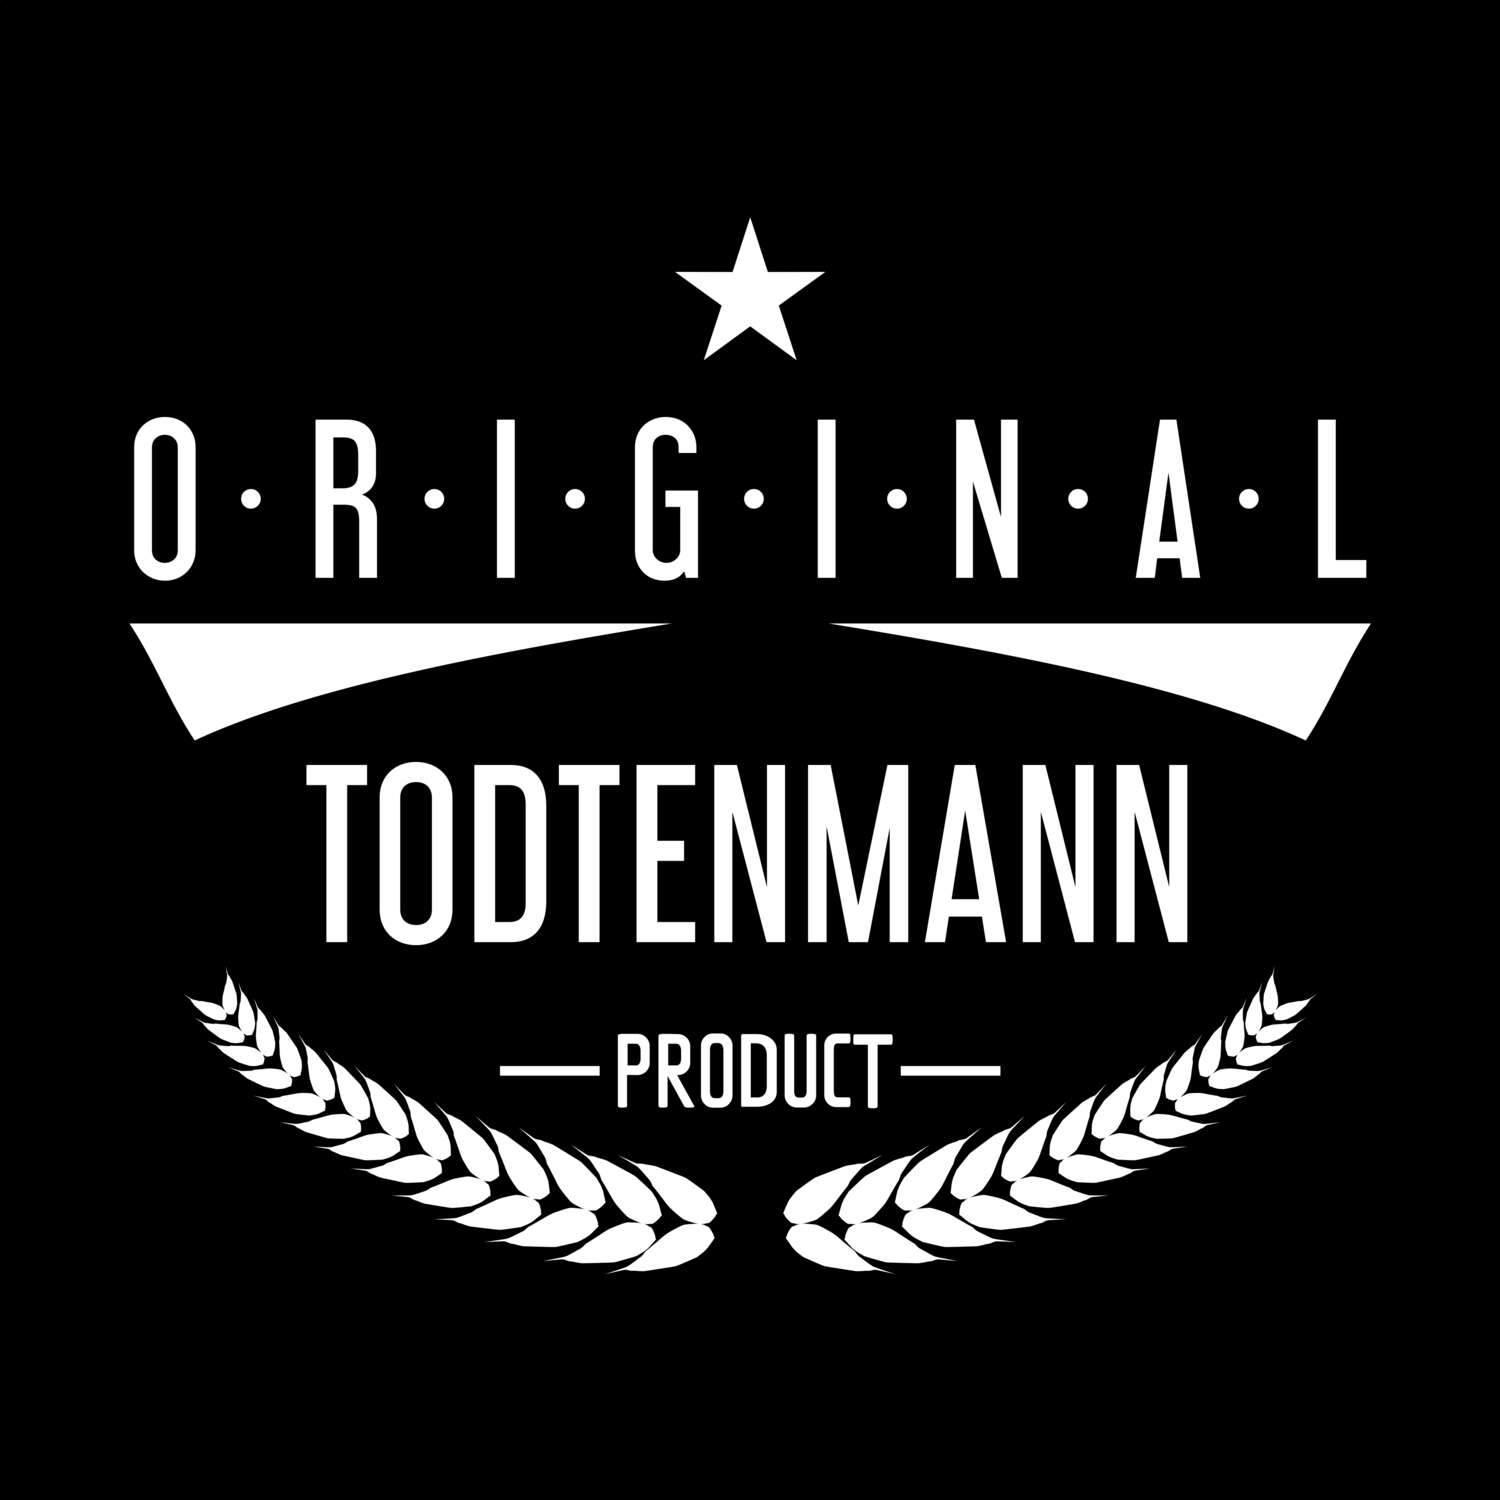 Todtenmann T-Shirt »Original Product«